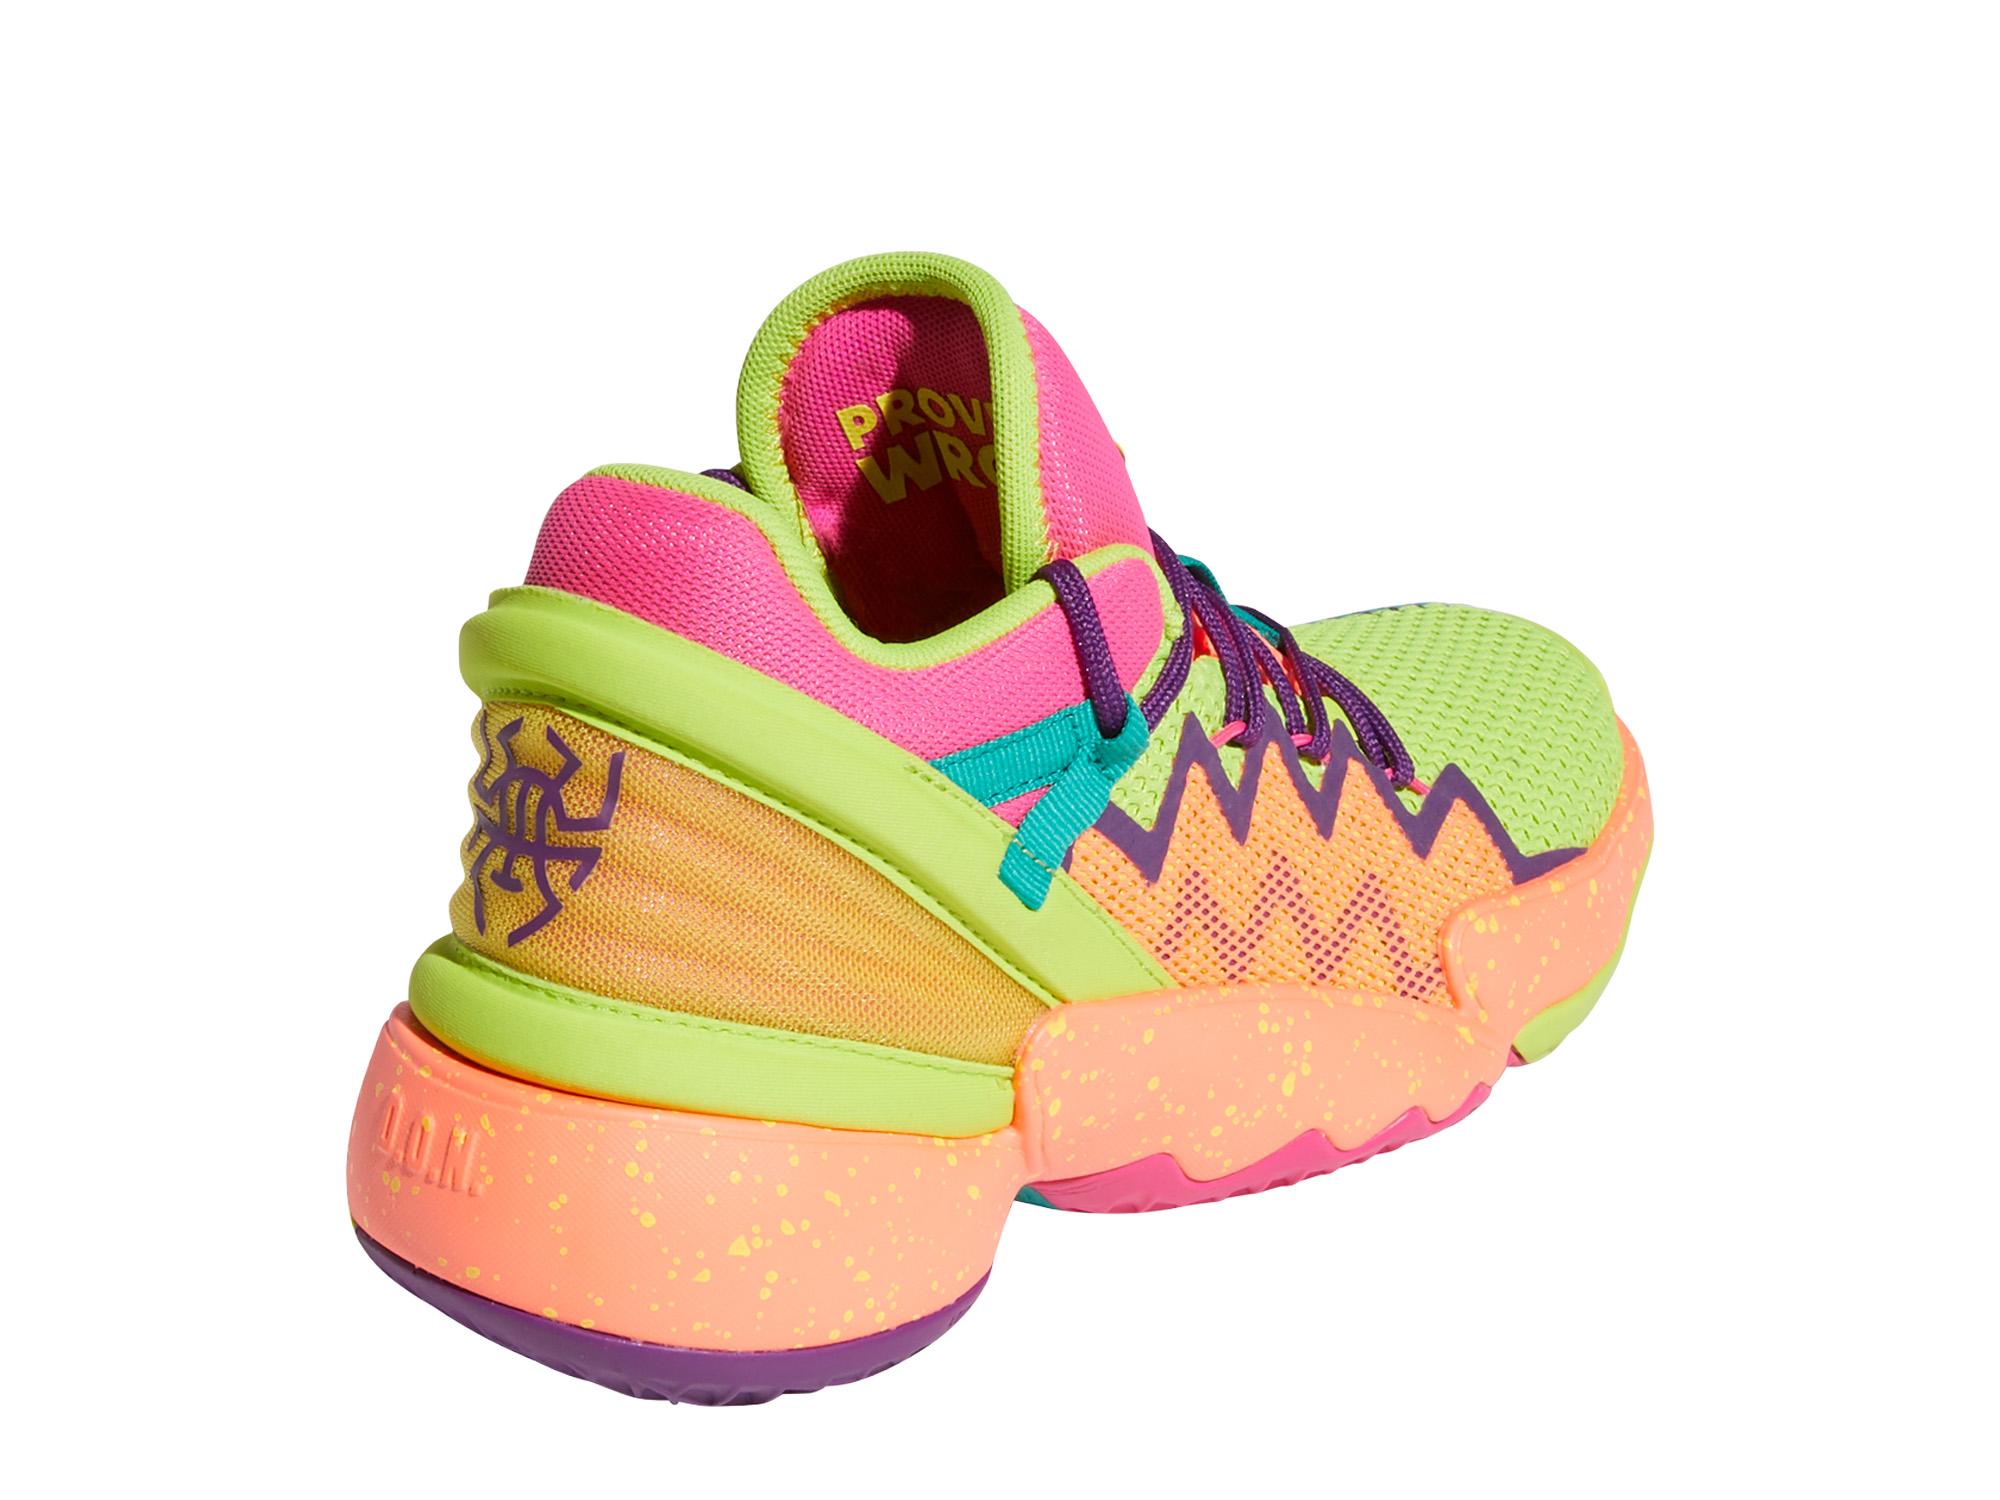 Adidas D.O.N. Issue 2 Kinder Basketballschuh